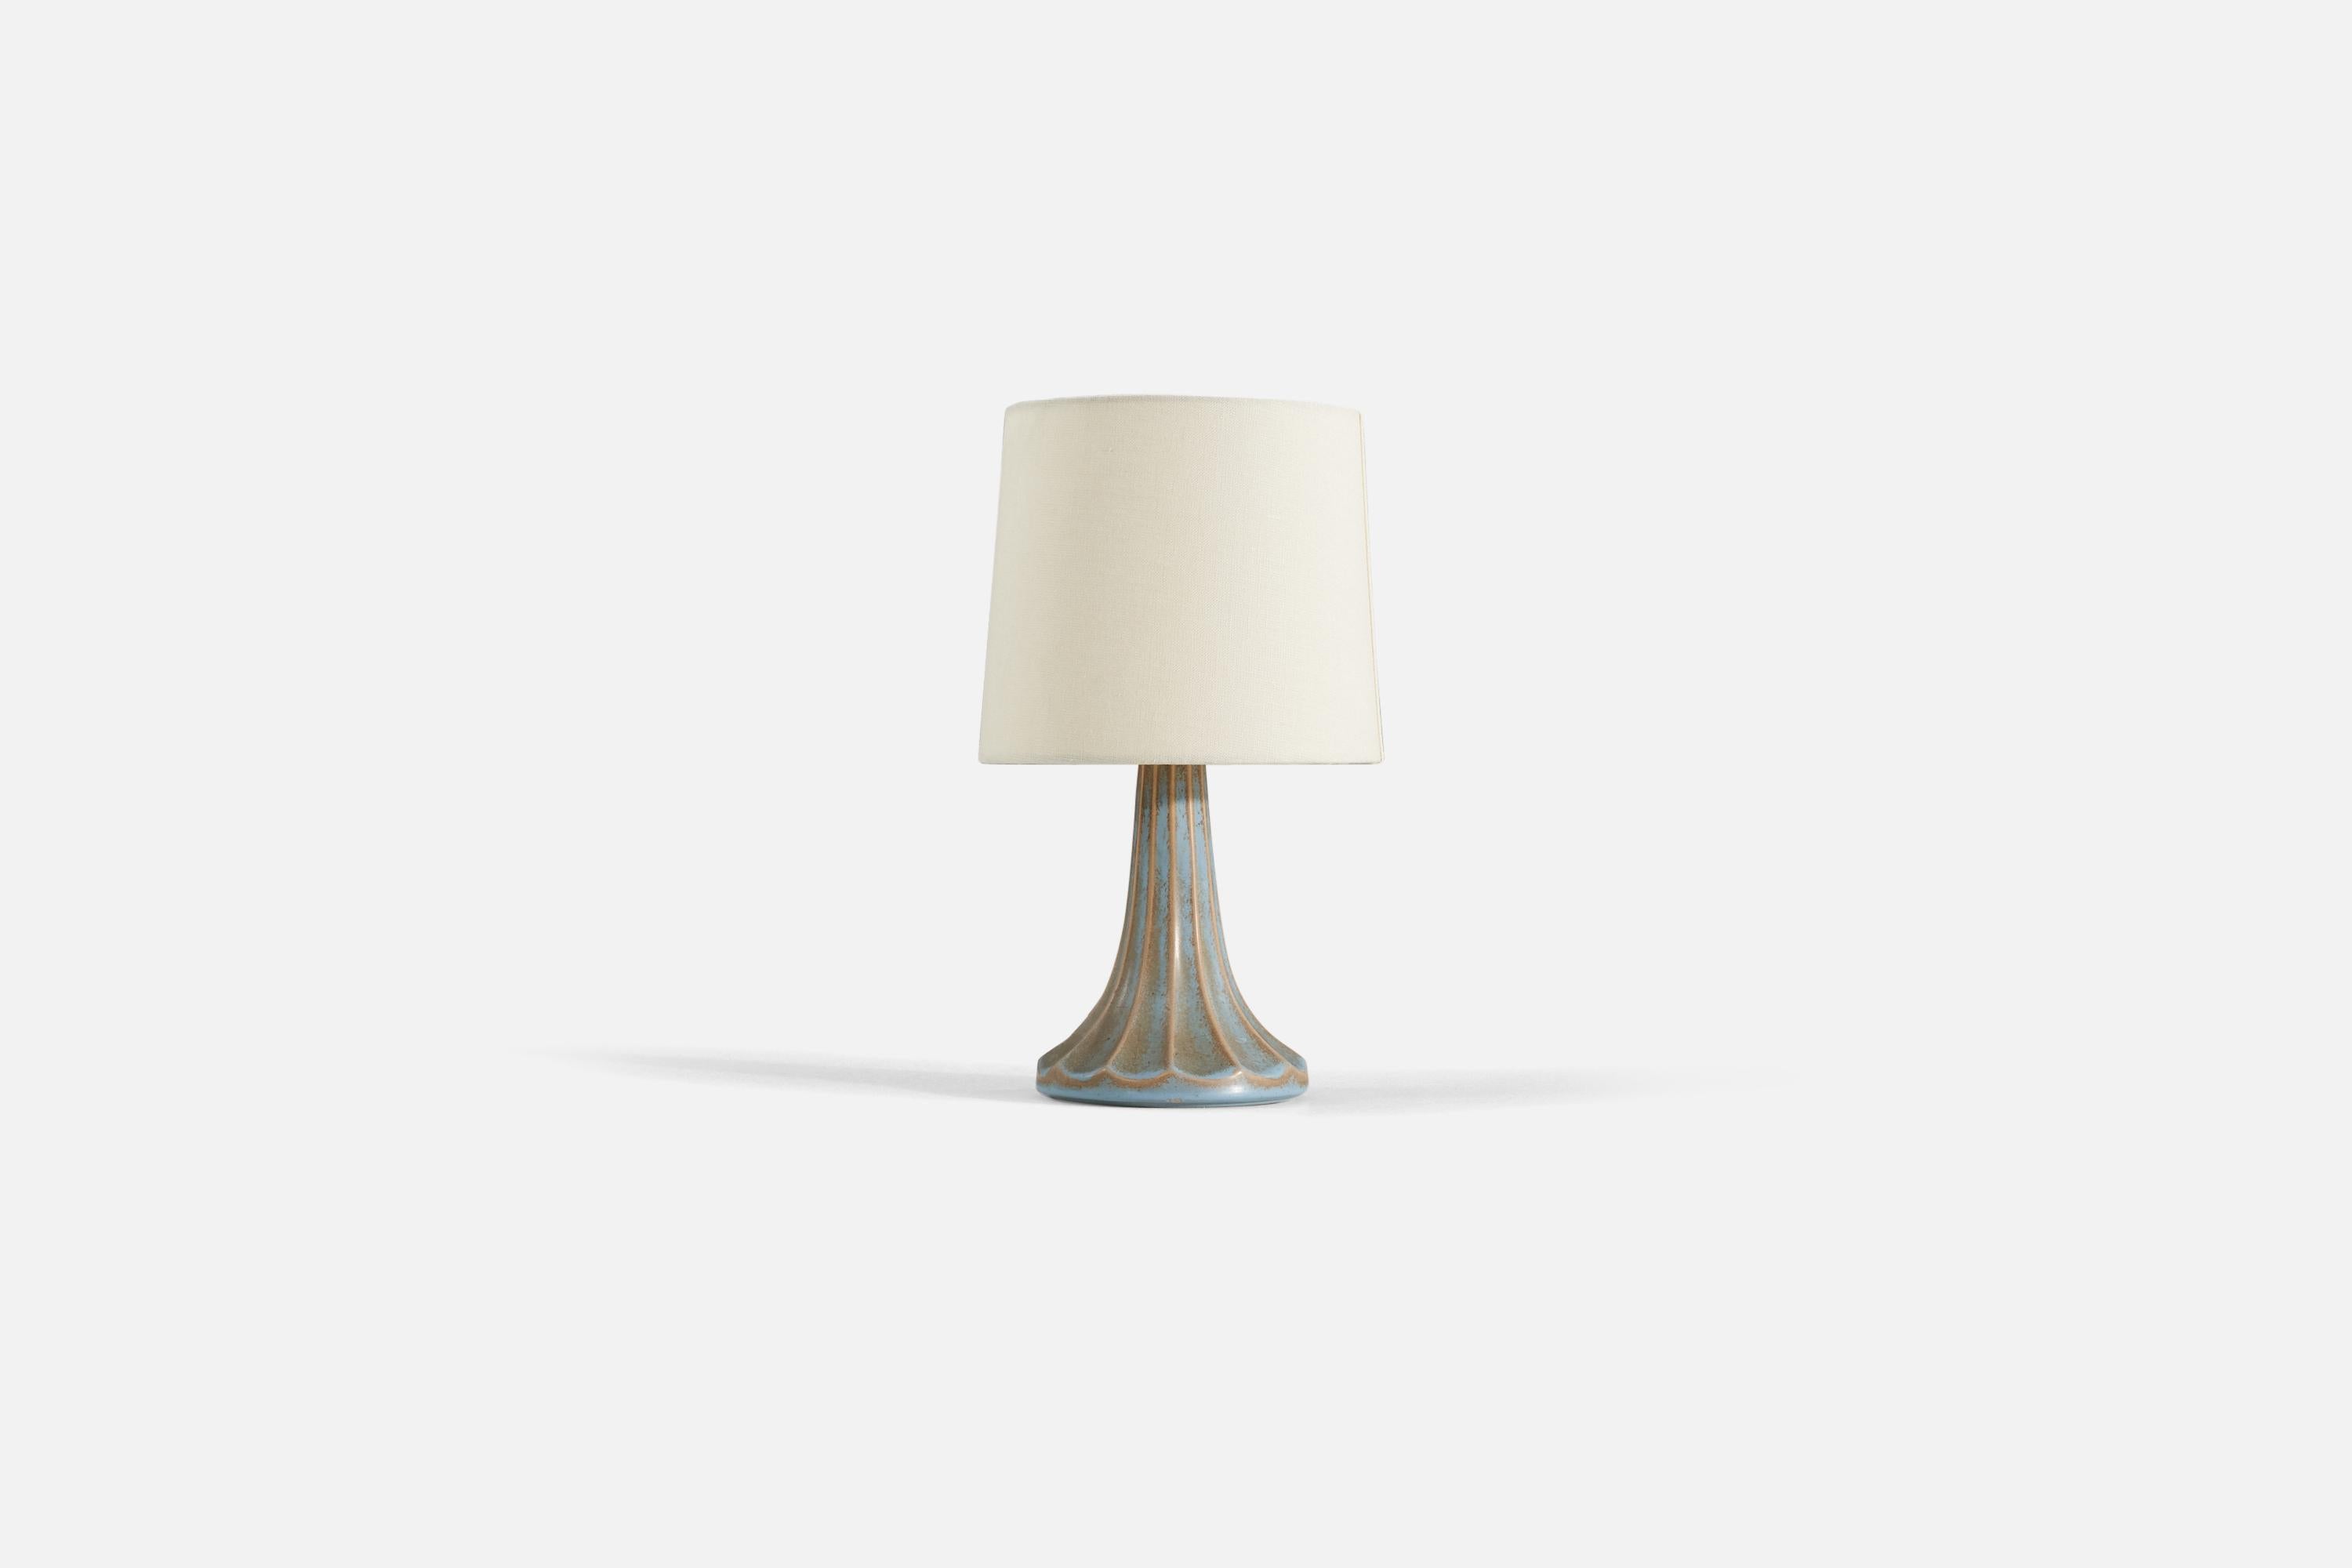 Lampe de table en faïence émaillée bleue. Conçu par Ewald Dahlskog, produit par Bo Fajans, Suède, années 1930-1940.

Vendu sans abat-jour. 

Les mesures indiquées sont celles de la lampe.
Abat-jour : 7 x 8 x 7
Lampe avec abat-jour : 13,5 x 8 x